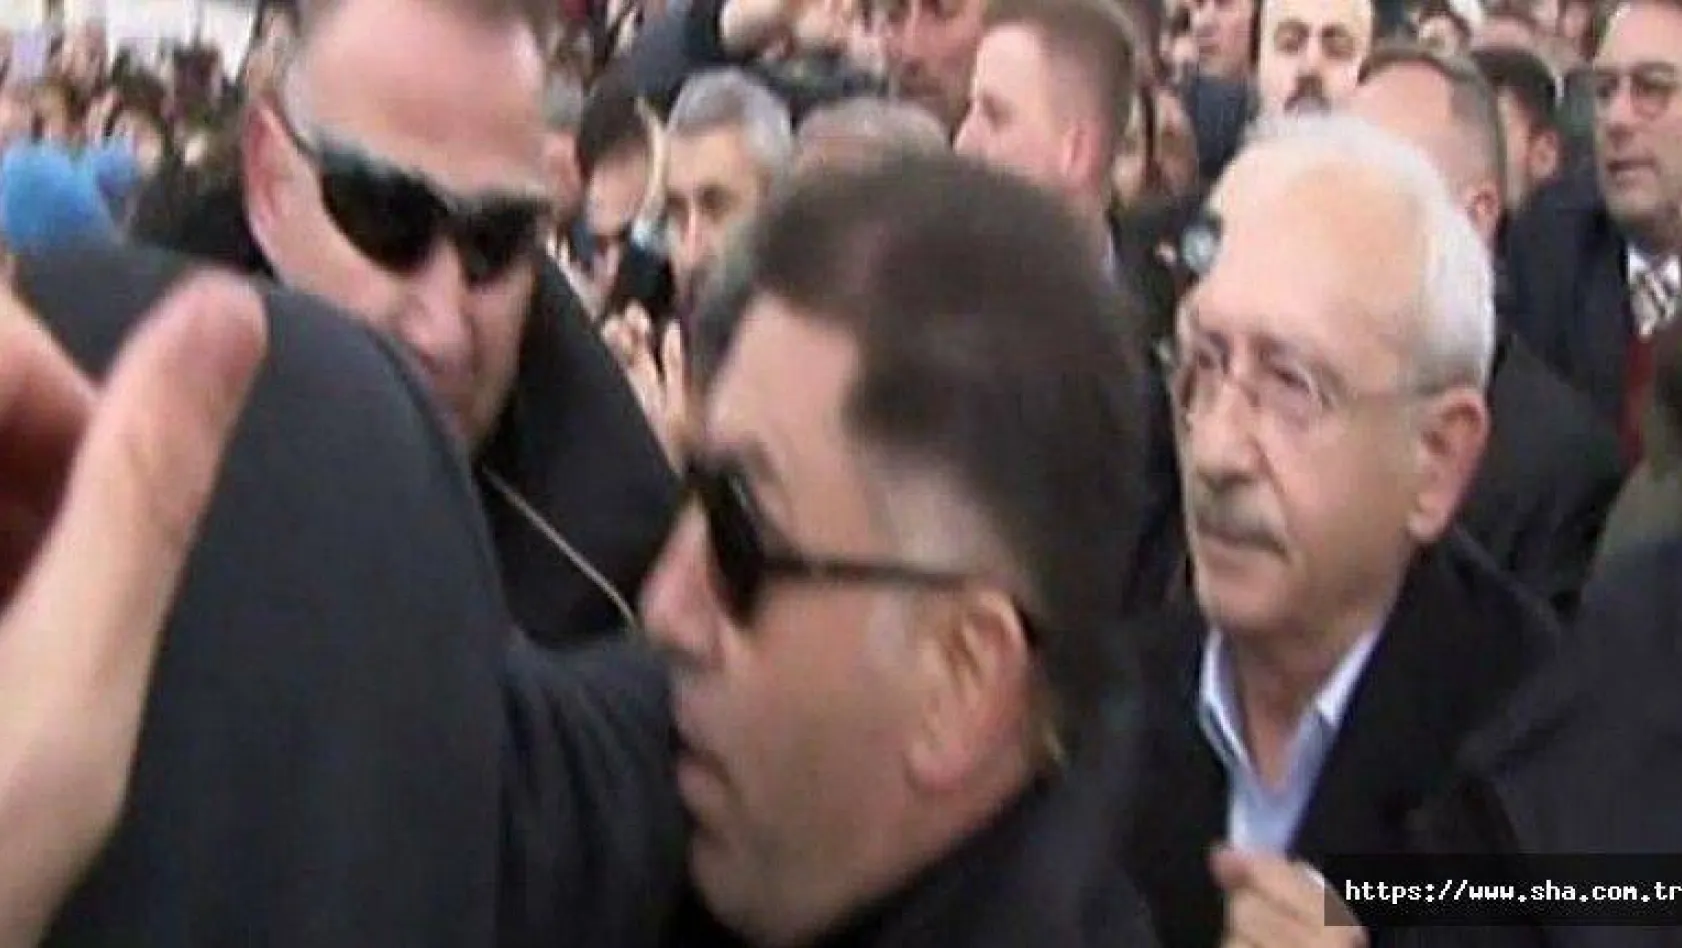 CHP Lideri Kılıçdaroğlu'na şehit cenazesinde saldırı